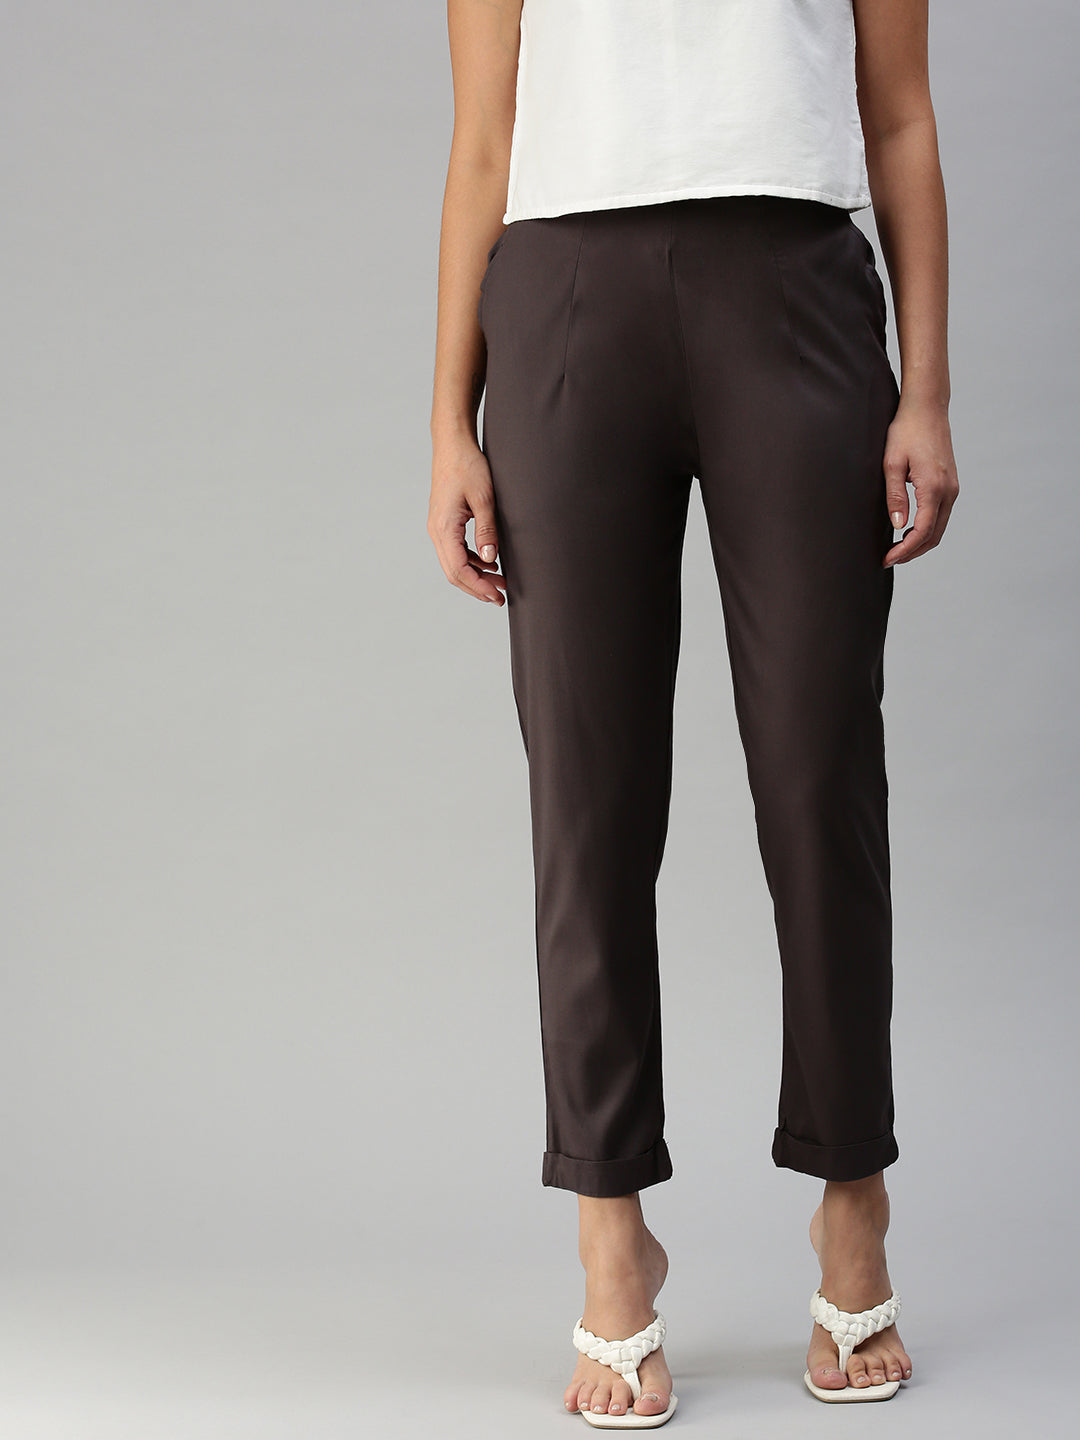 Sporty trouser | Pants | Women's | Ferragamo US